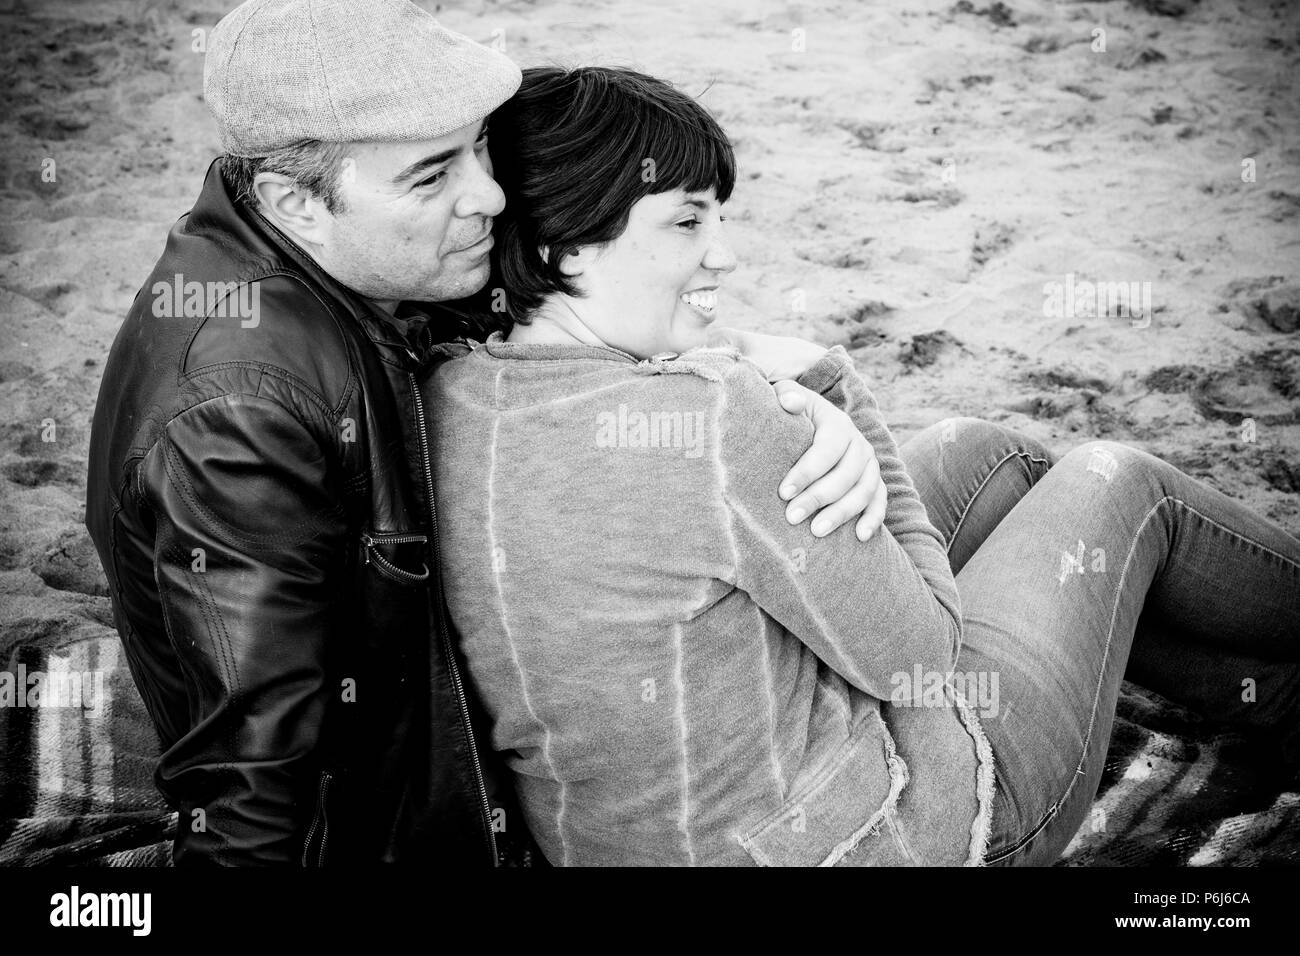 Romantische Szene mit kaukasischen Mann und Frau Mittelalter zusammen umarmen am Strand im Sommer Freizeitaktivitäten Aktivität. mode kleidung und liebe Konzept Stockfoto